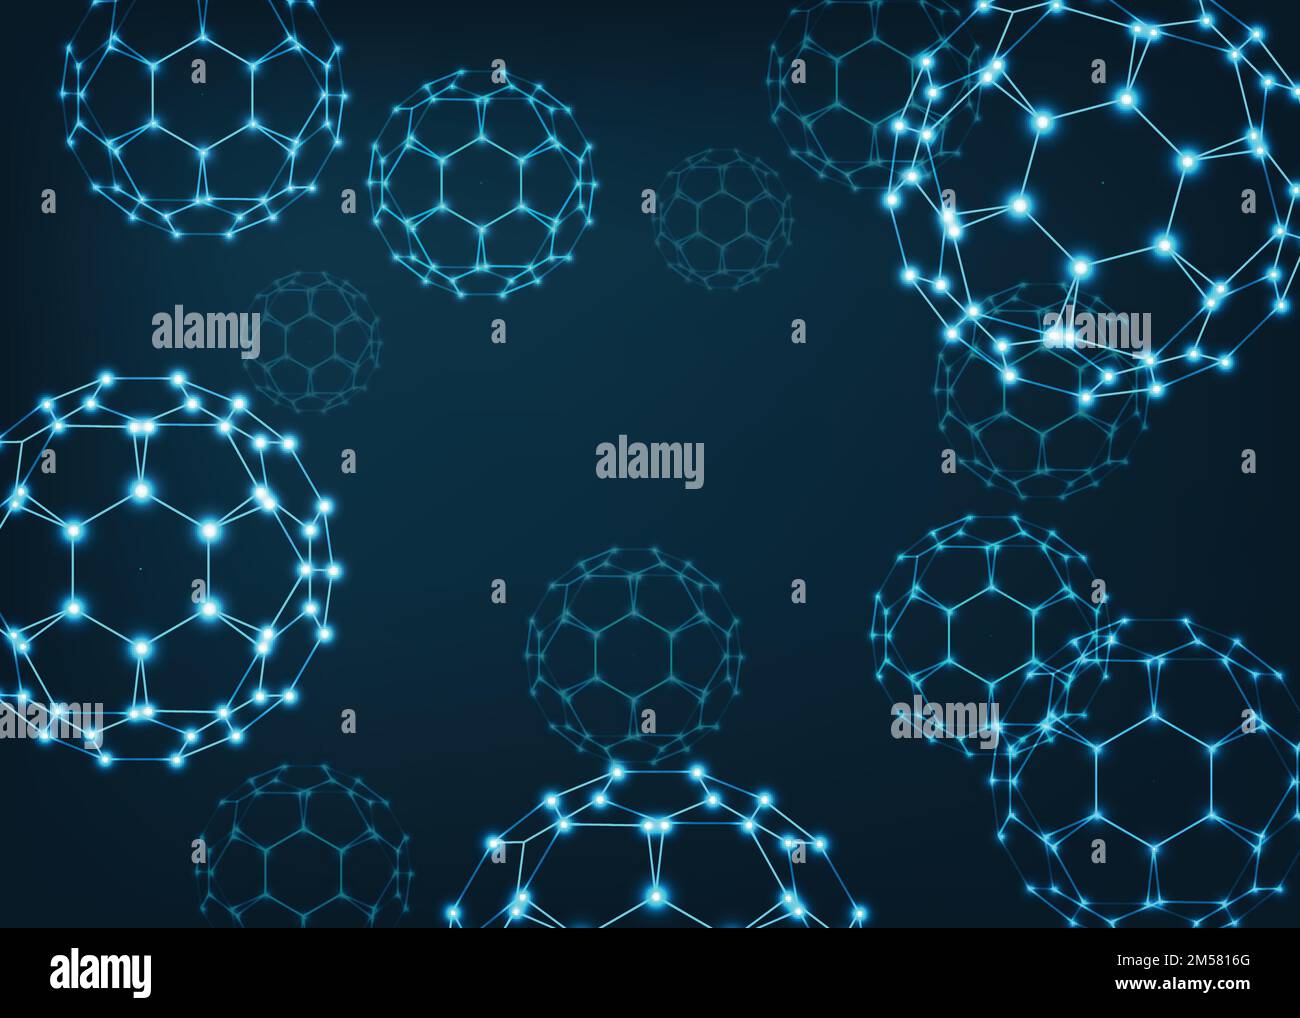 Abstrakter wissenschaftlicher Hintergrund mit Buckyball-Fullerenmolekülen. Nanowissenschaftskonzept. Punkte und Linien, polygonale Drahtmodellkonstruktion. Vektor Stock Vektor